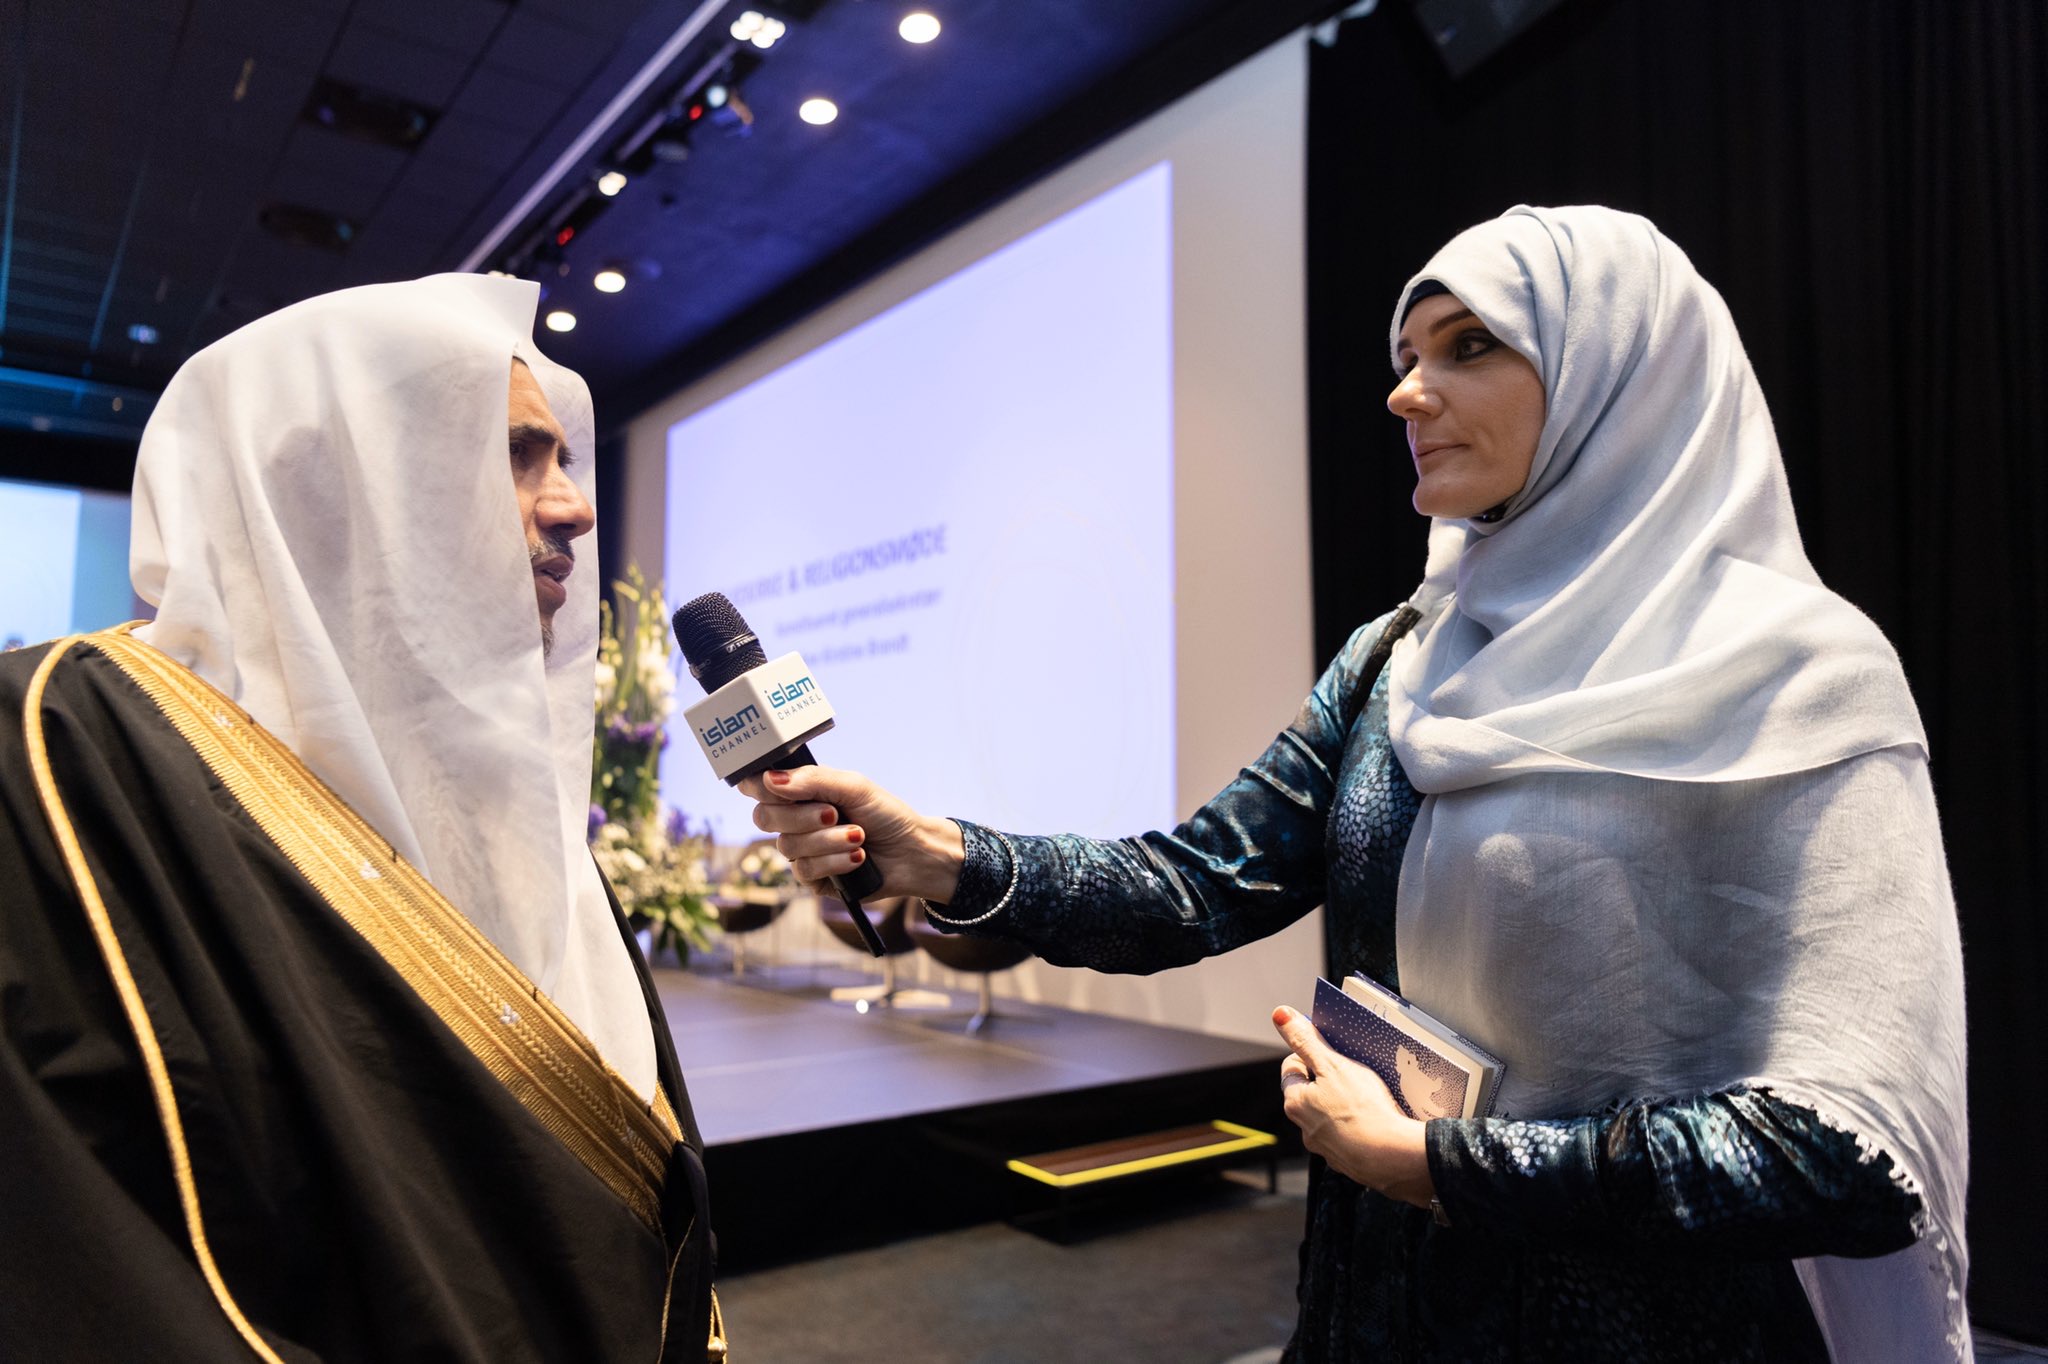 La communauté musulmane du Danemark reçoit le D. Mohammad Alissa et organise avec lui un dialogue avec différents représentants qui ont considéré sa venue comme un moyen de faire une présentation authentique de l’Islam.